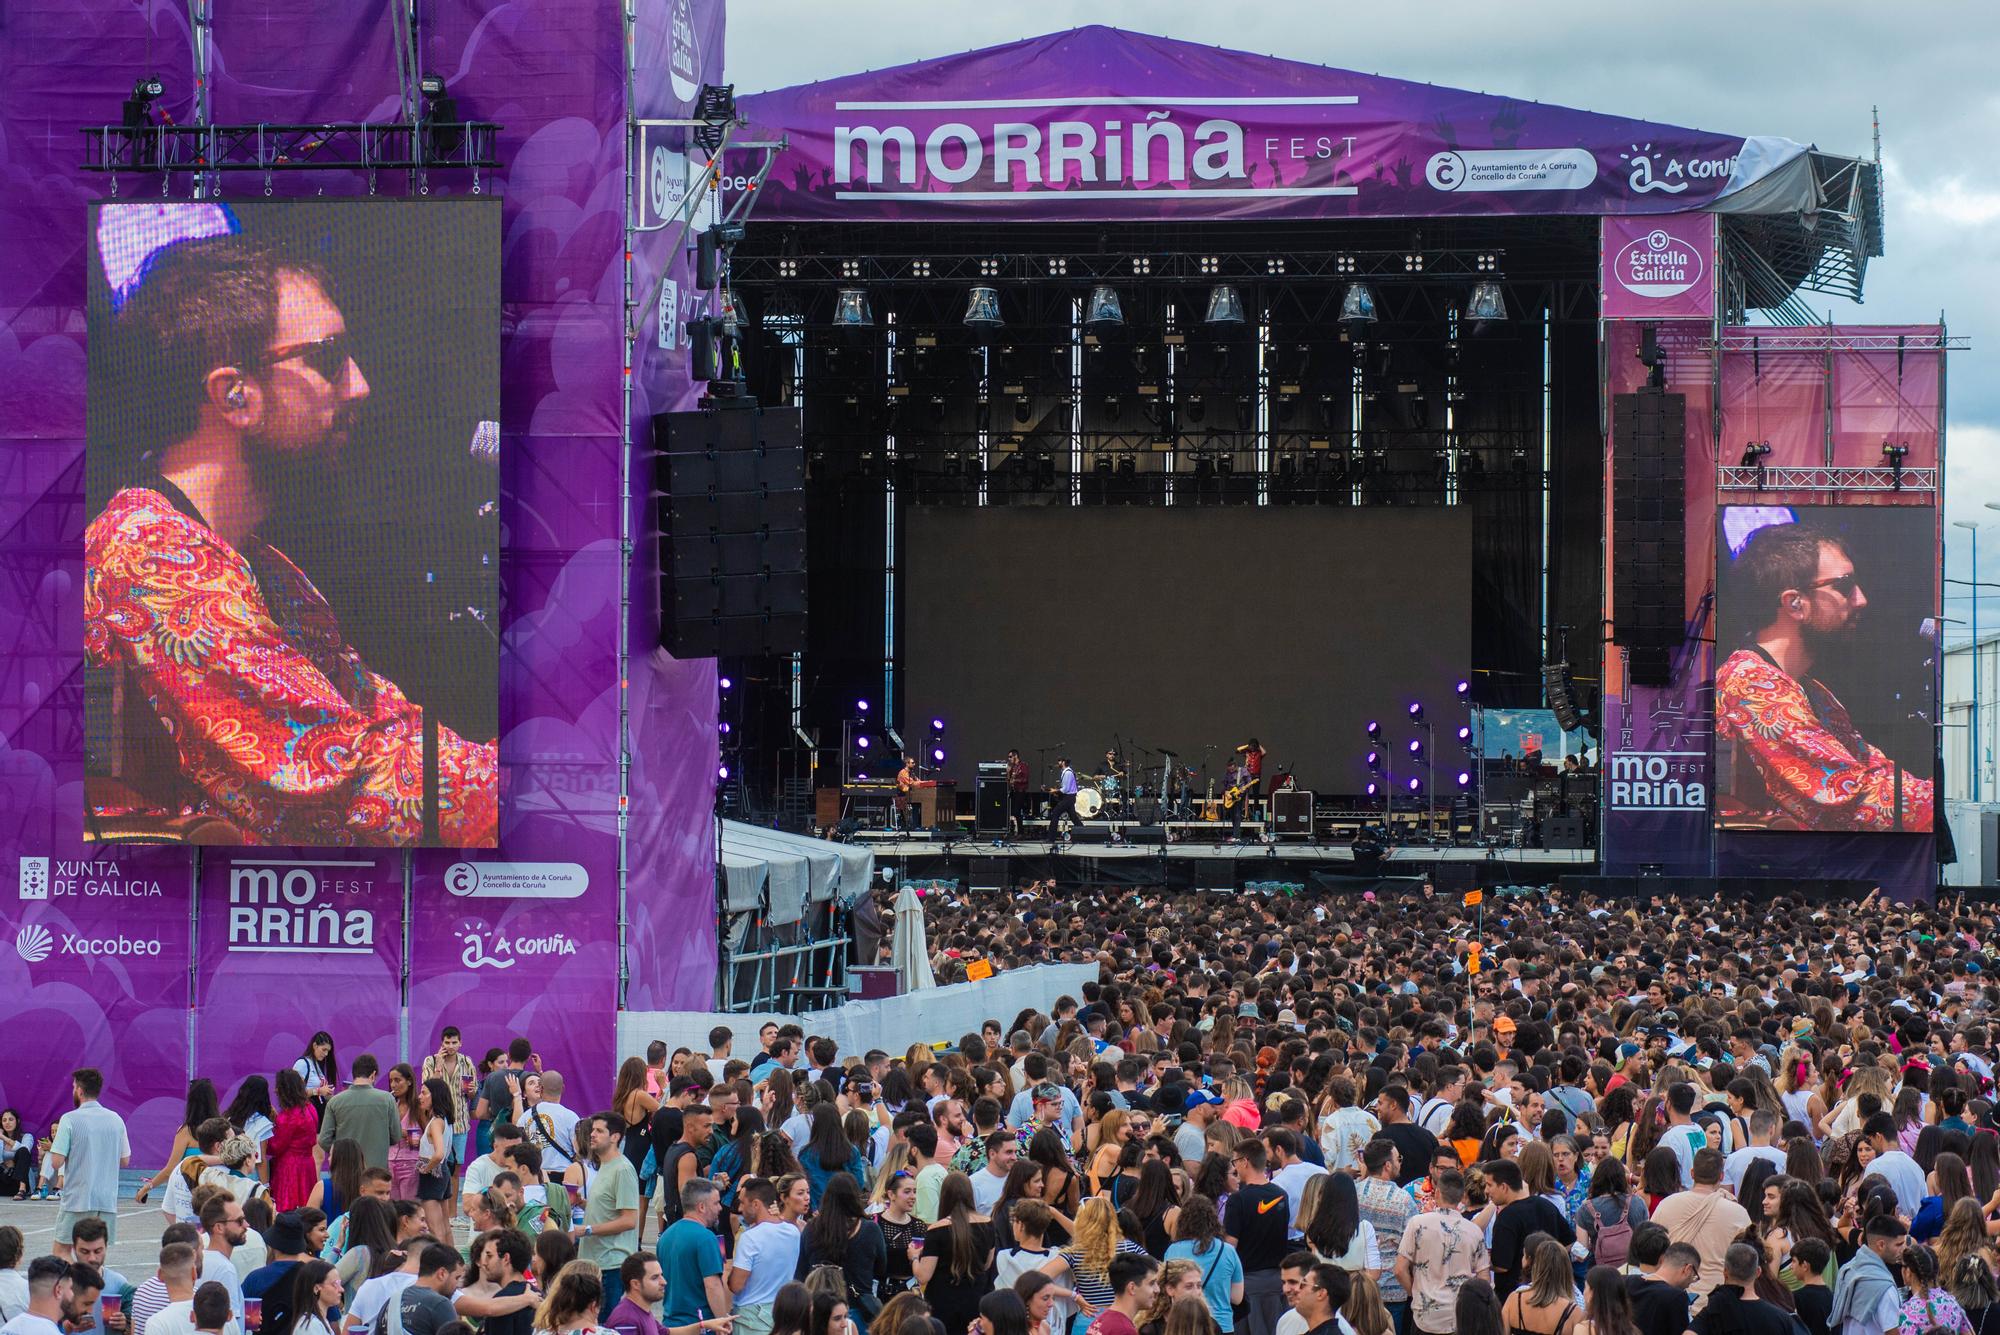 Morriña Fest A Coruña 2023: Primer día de conciertos con Bizarrap, Jason Derulo y más artistas